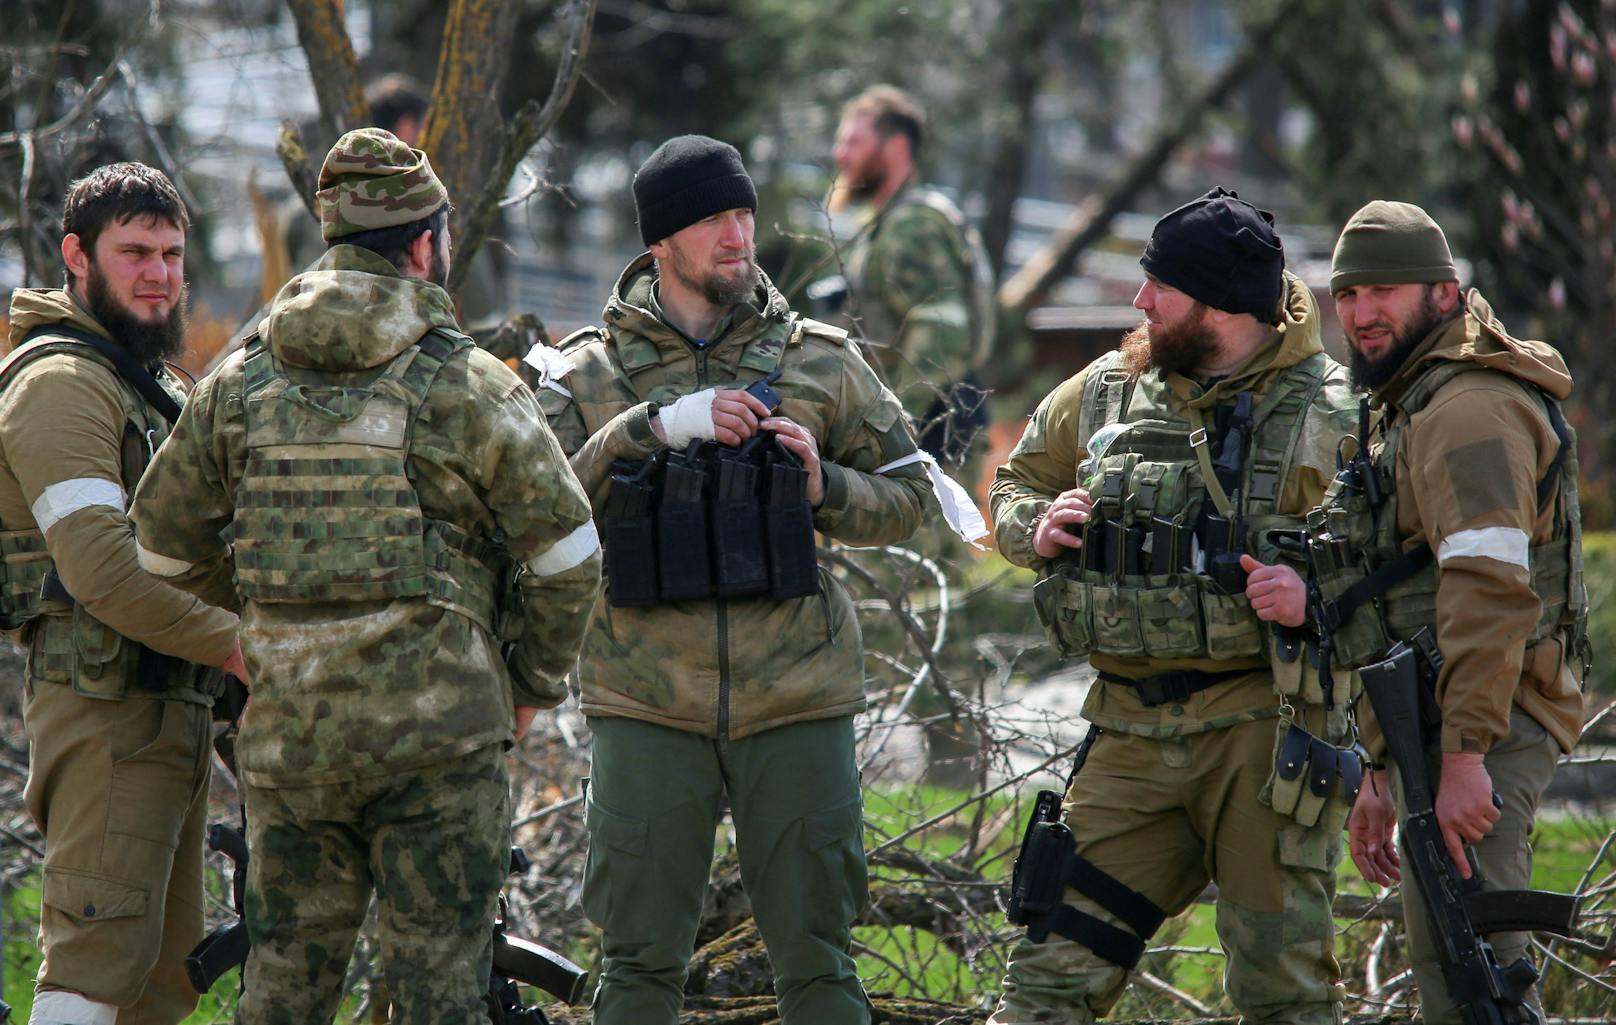 Ukrainischen Angaben zufolge gab sie dabei sogar zu, dass der Auftrag "Mariupol vernichten und säubern" gewesen sei.